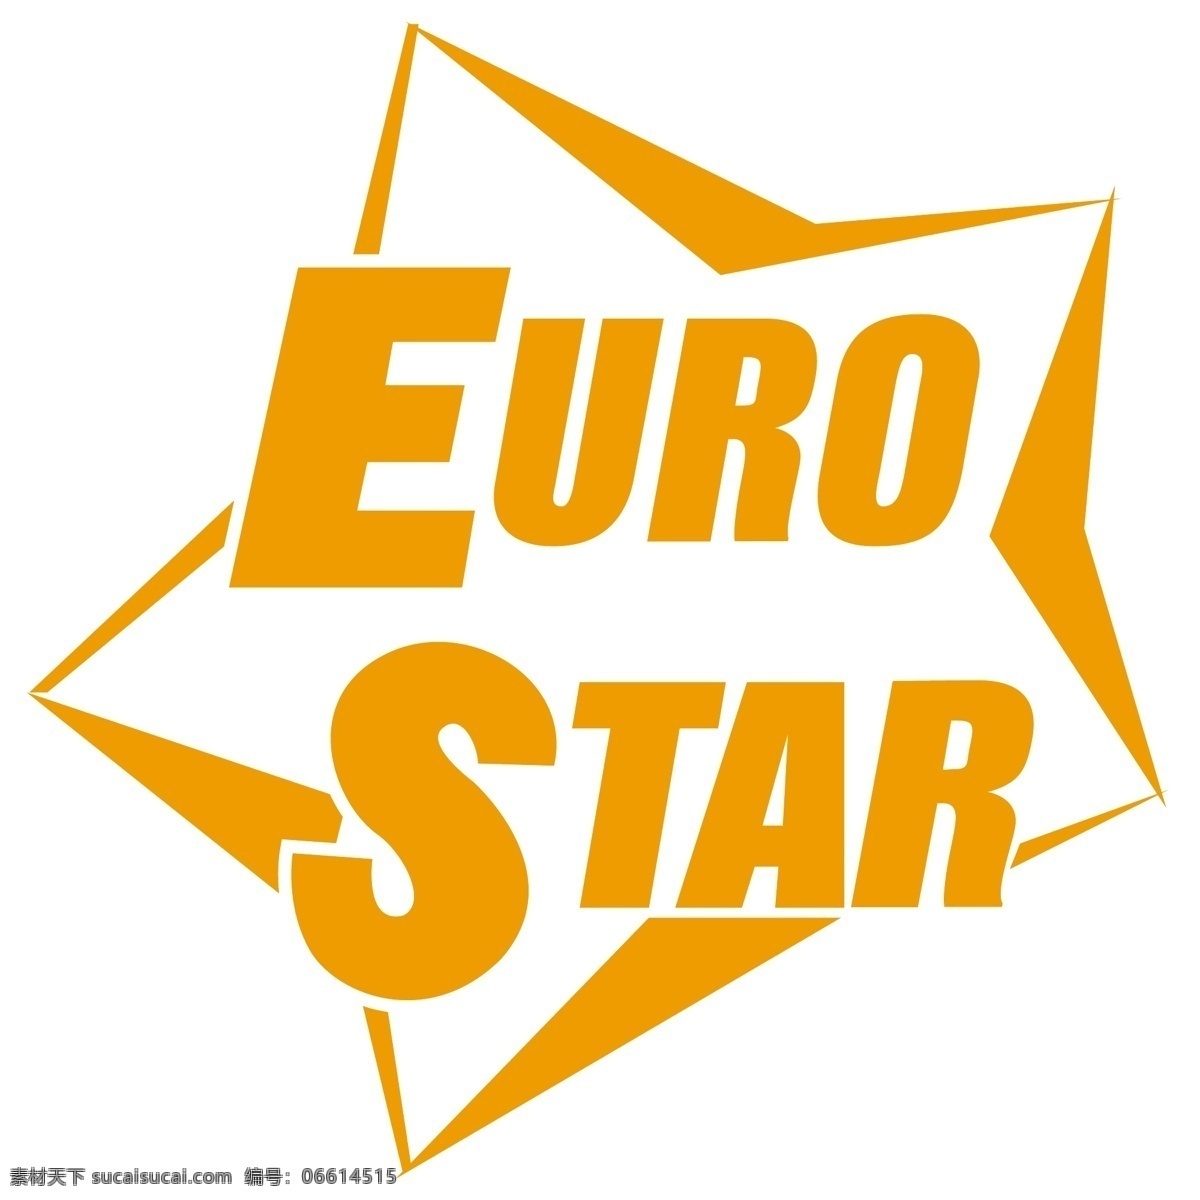 欧洲 之星 标识 公司 免费 品牌 品牌标识 商标 矢量标志下载 免费矢量标识 矢量 psd源文件 logo设计